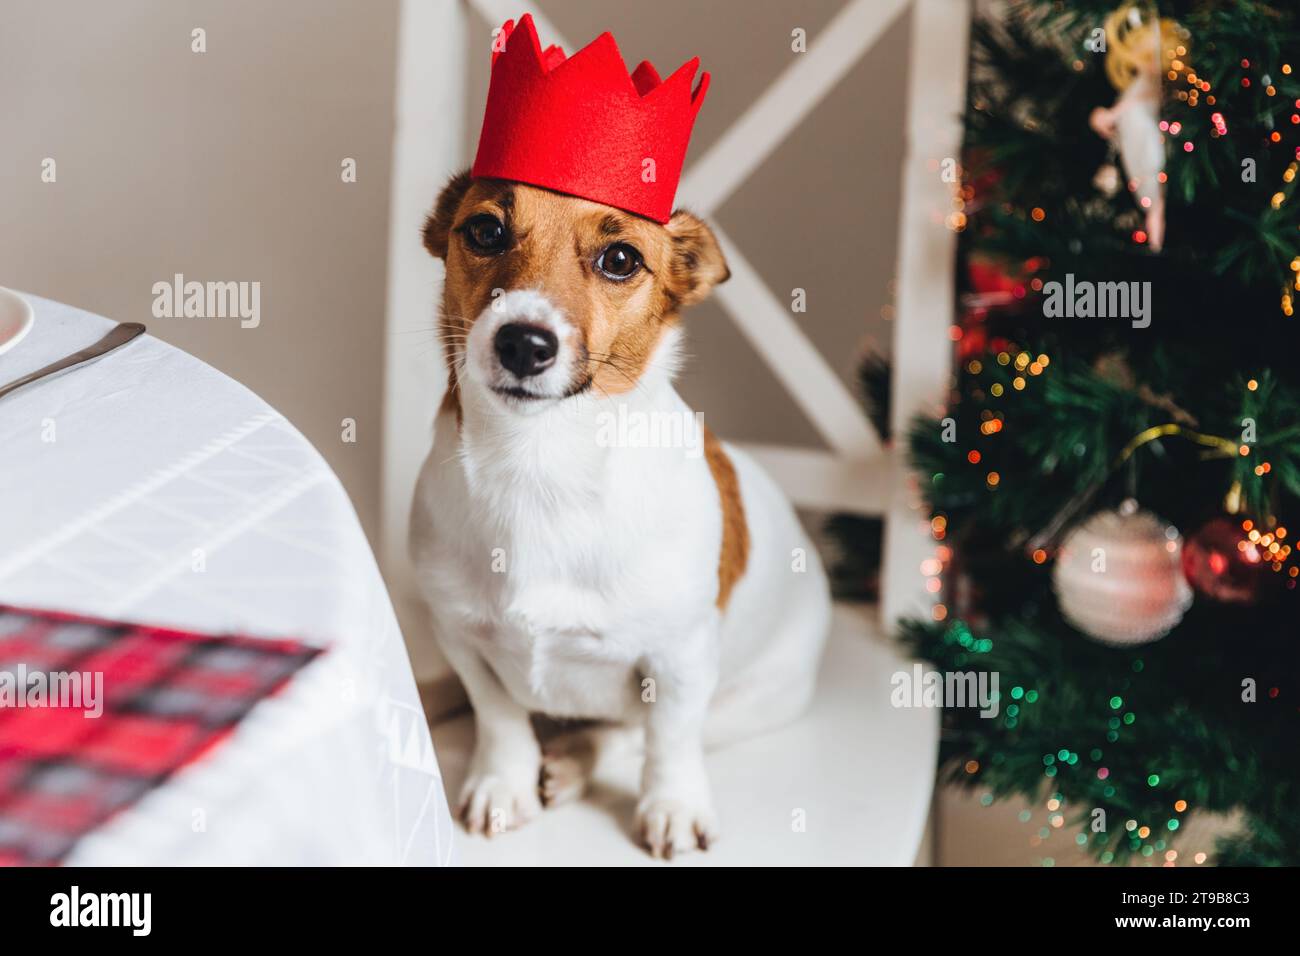 Ein entzückender Hund mit roter Partykrone sieht an, mit einem festlichen Weihnachtsbaum, der mit Lichtern im Hintergrund geschmückt ist Stockfoto